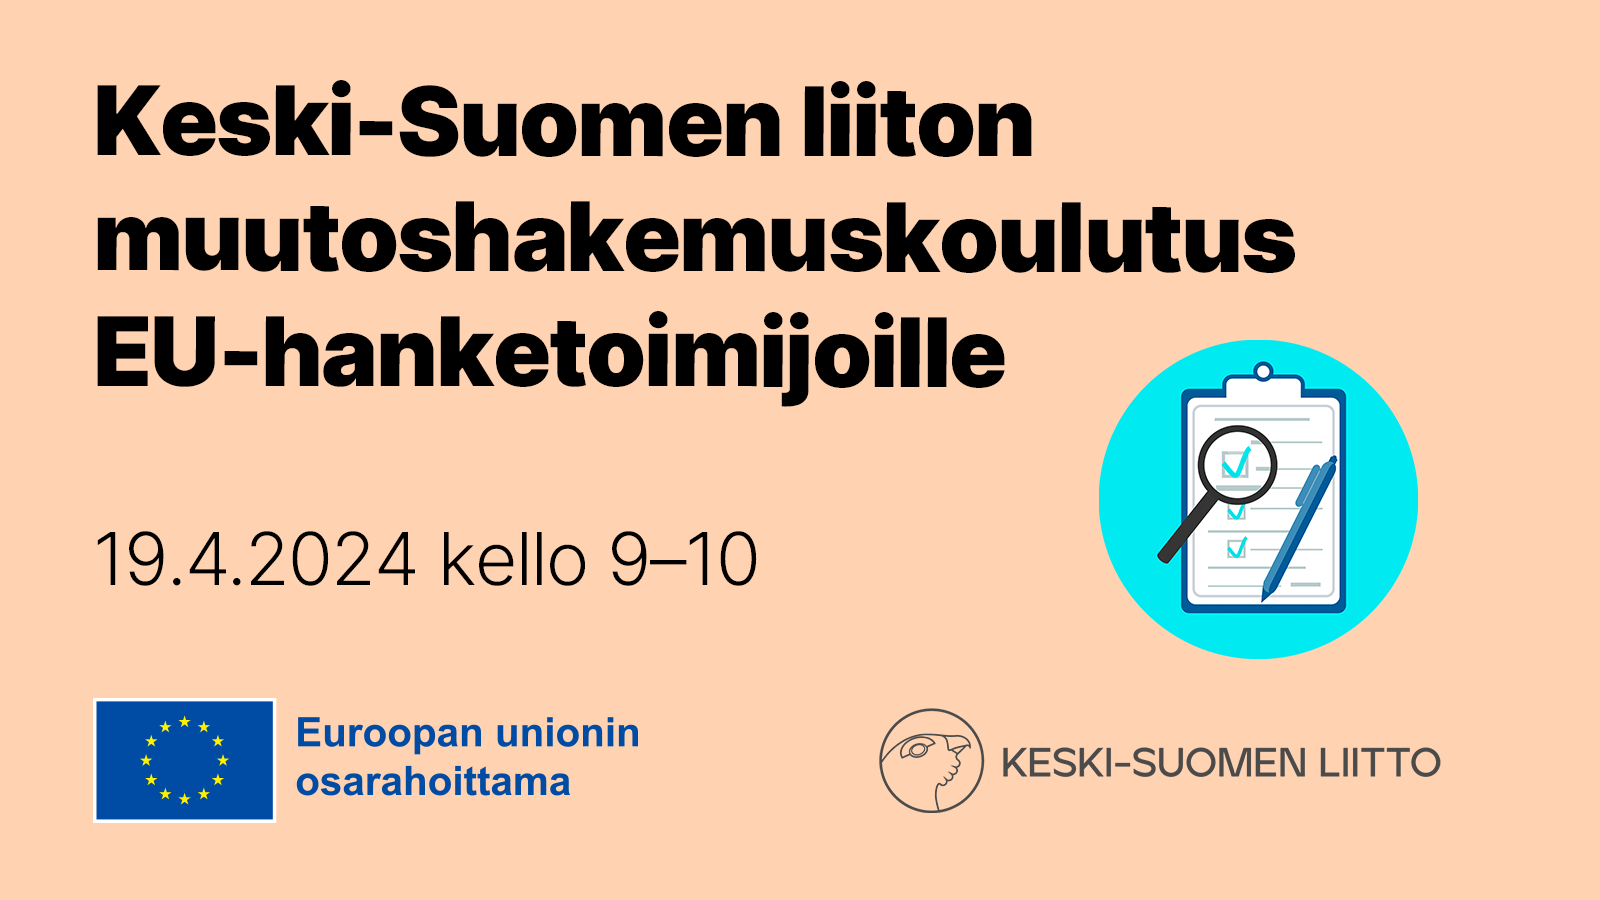 Keski-Suomen liiton muutoshakemuskoulutus EU-hanketoimijoille 19.4.2024 kello 9–10. Euroopan unionin osarahoittama.